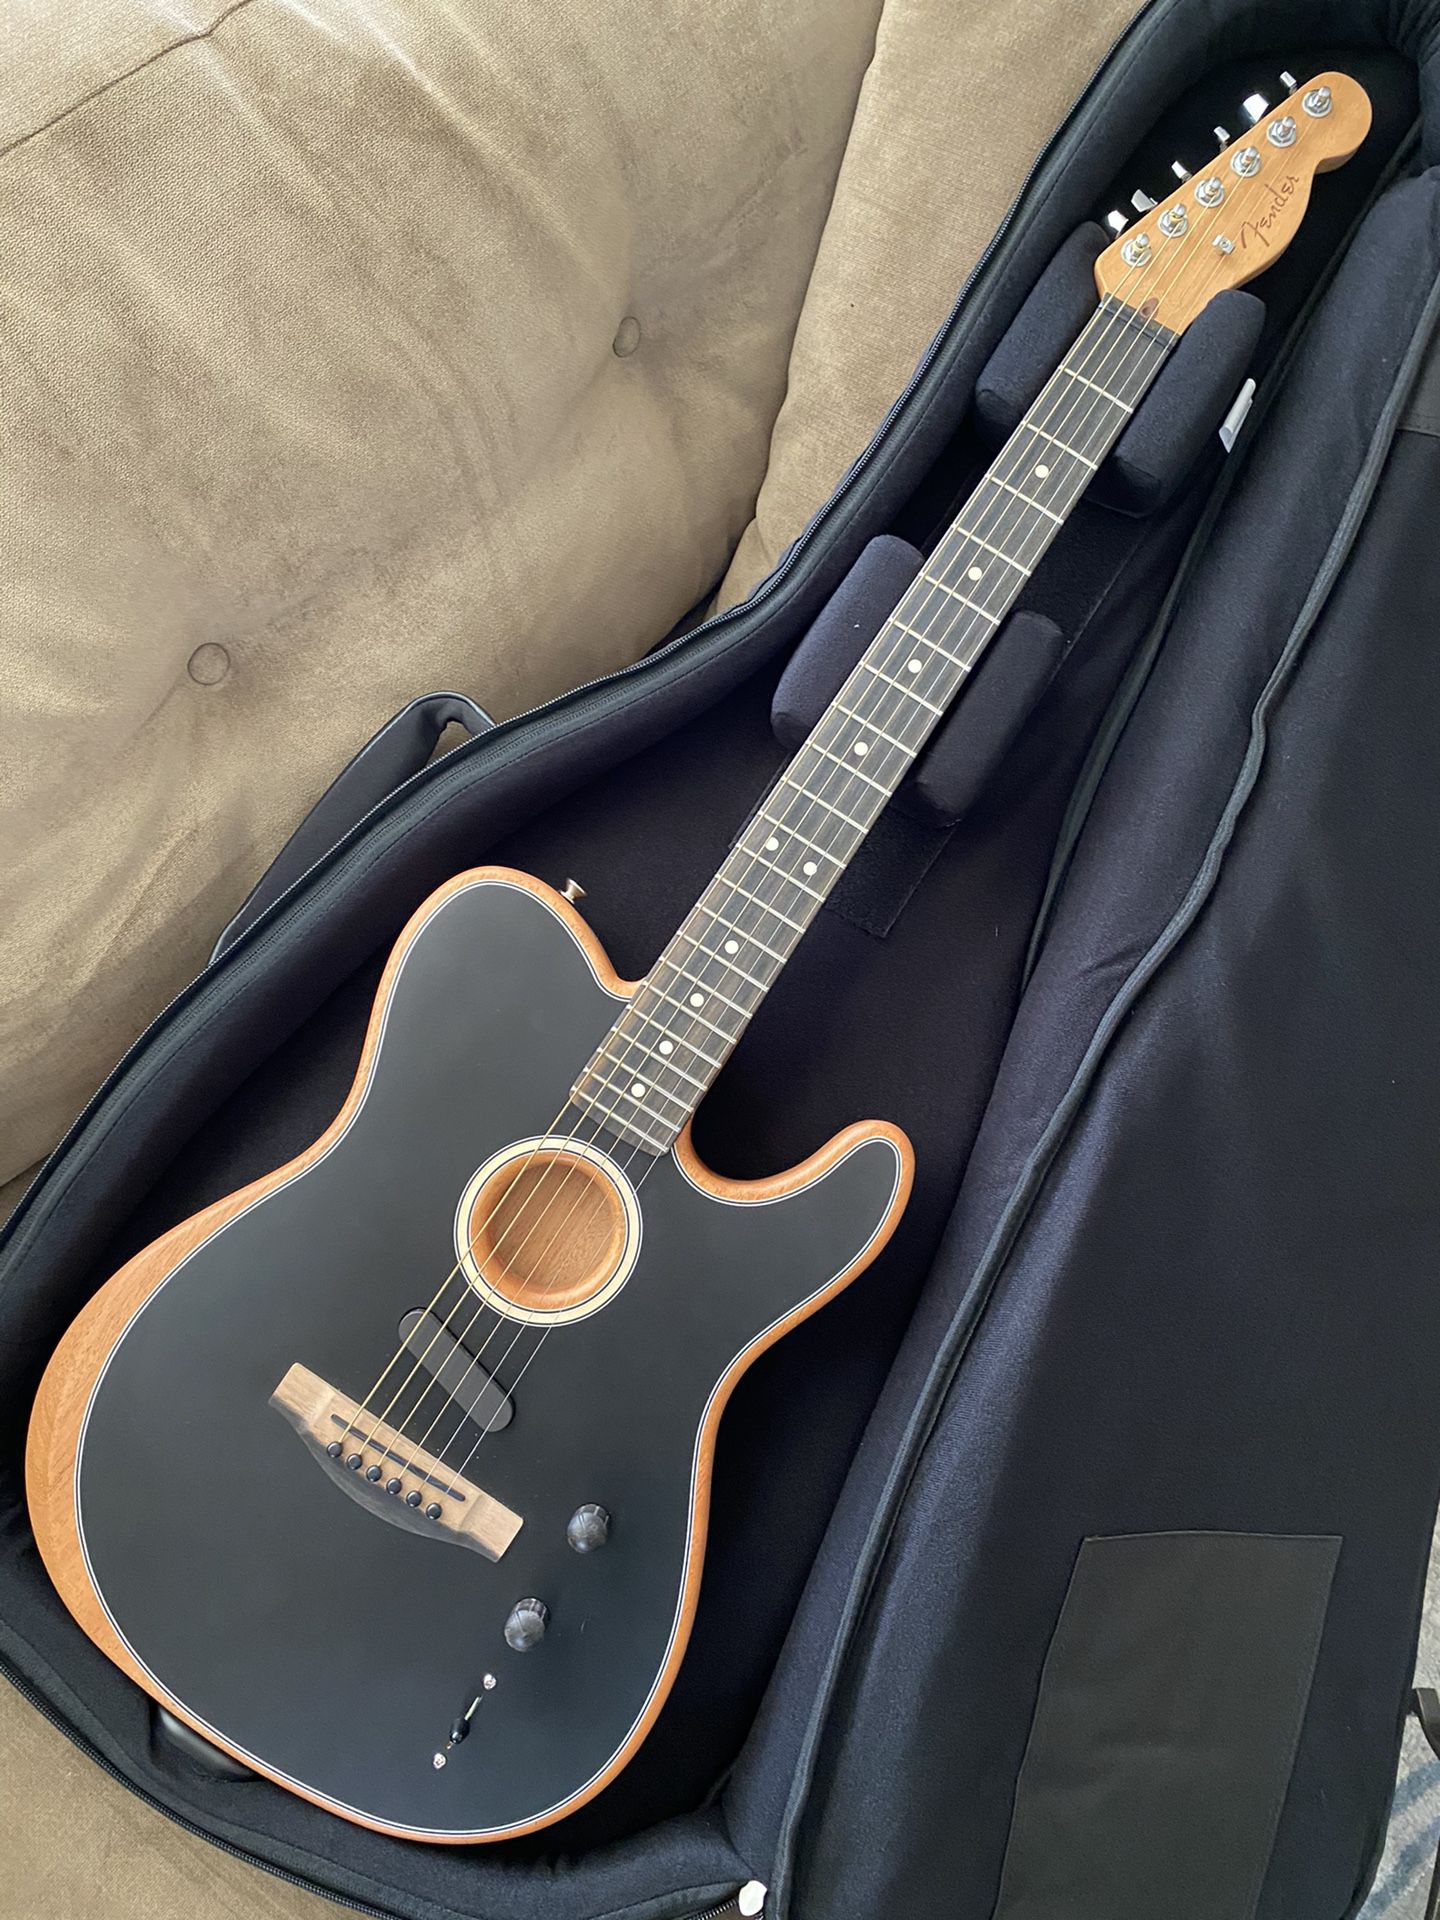 Fender American Acoustasonic Telecaster guitar